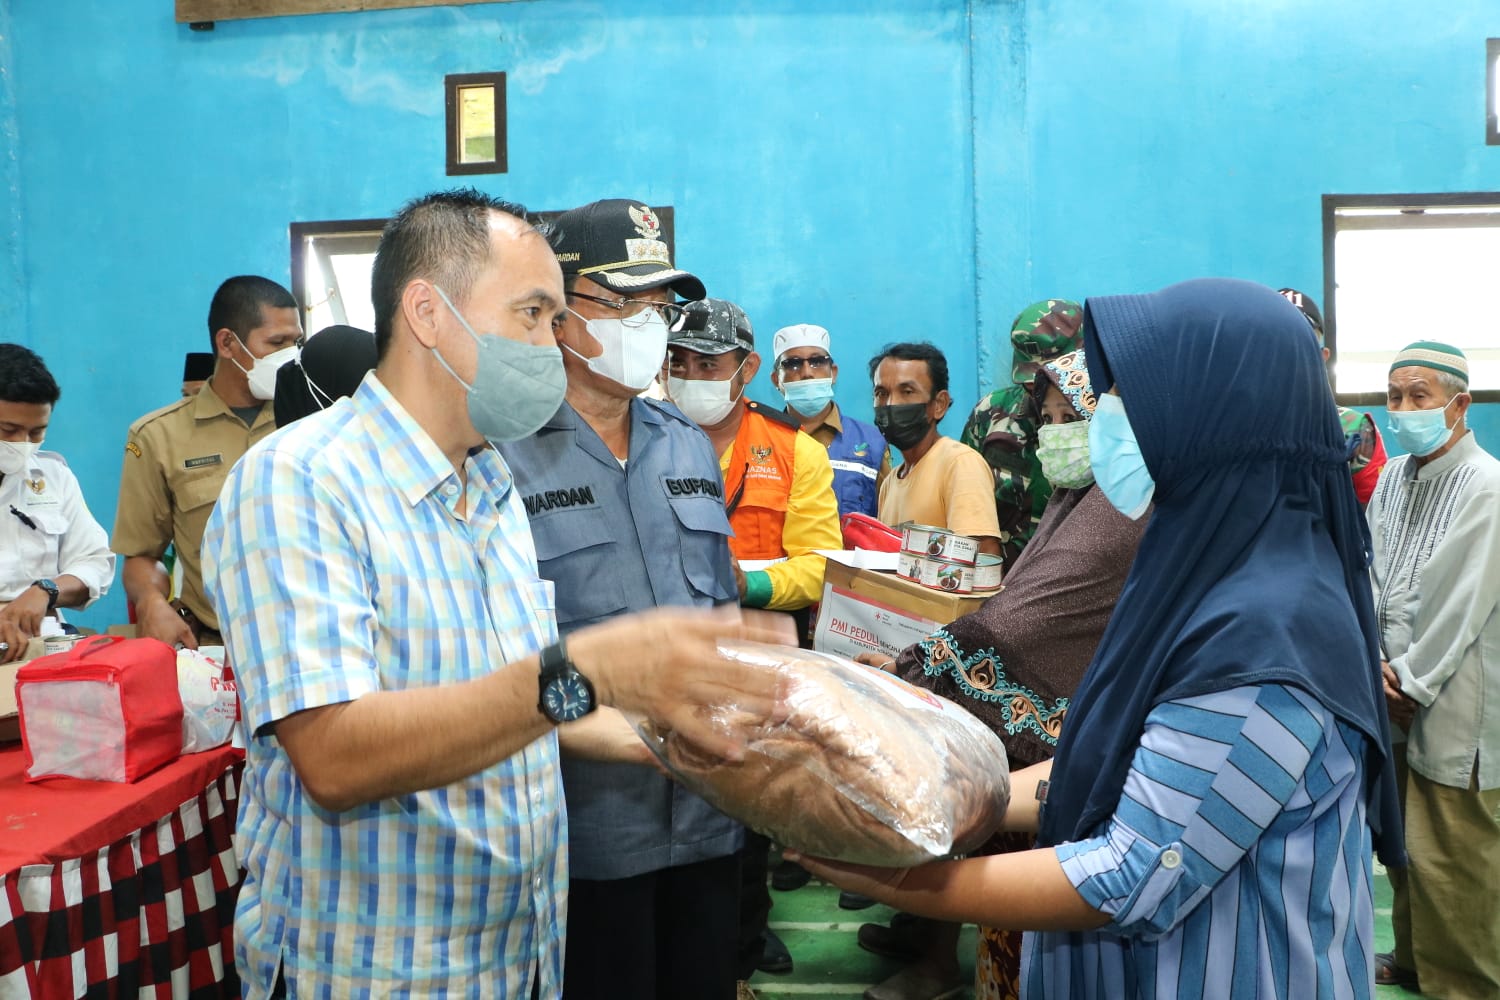 Bersama Bupati, Ketua DPRD Inhil Tinjau dan Berikan Bantuan untuk Korban Longsor di Tanjung Baru